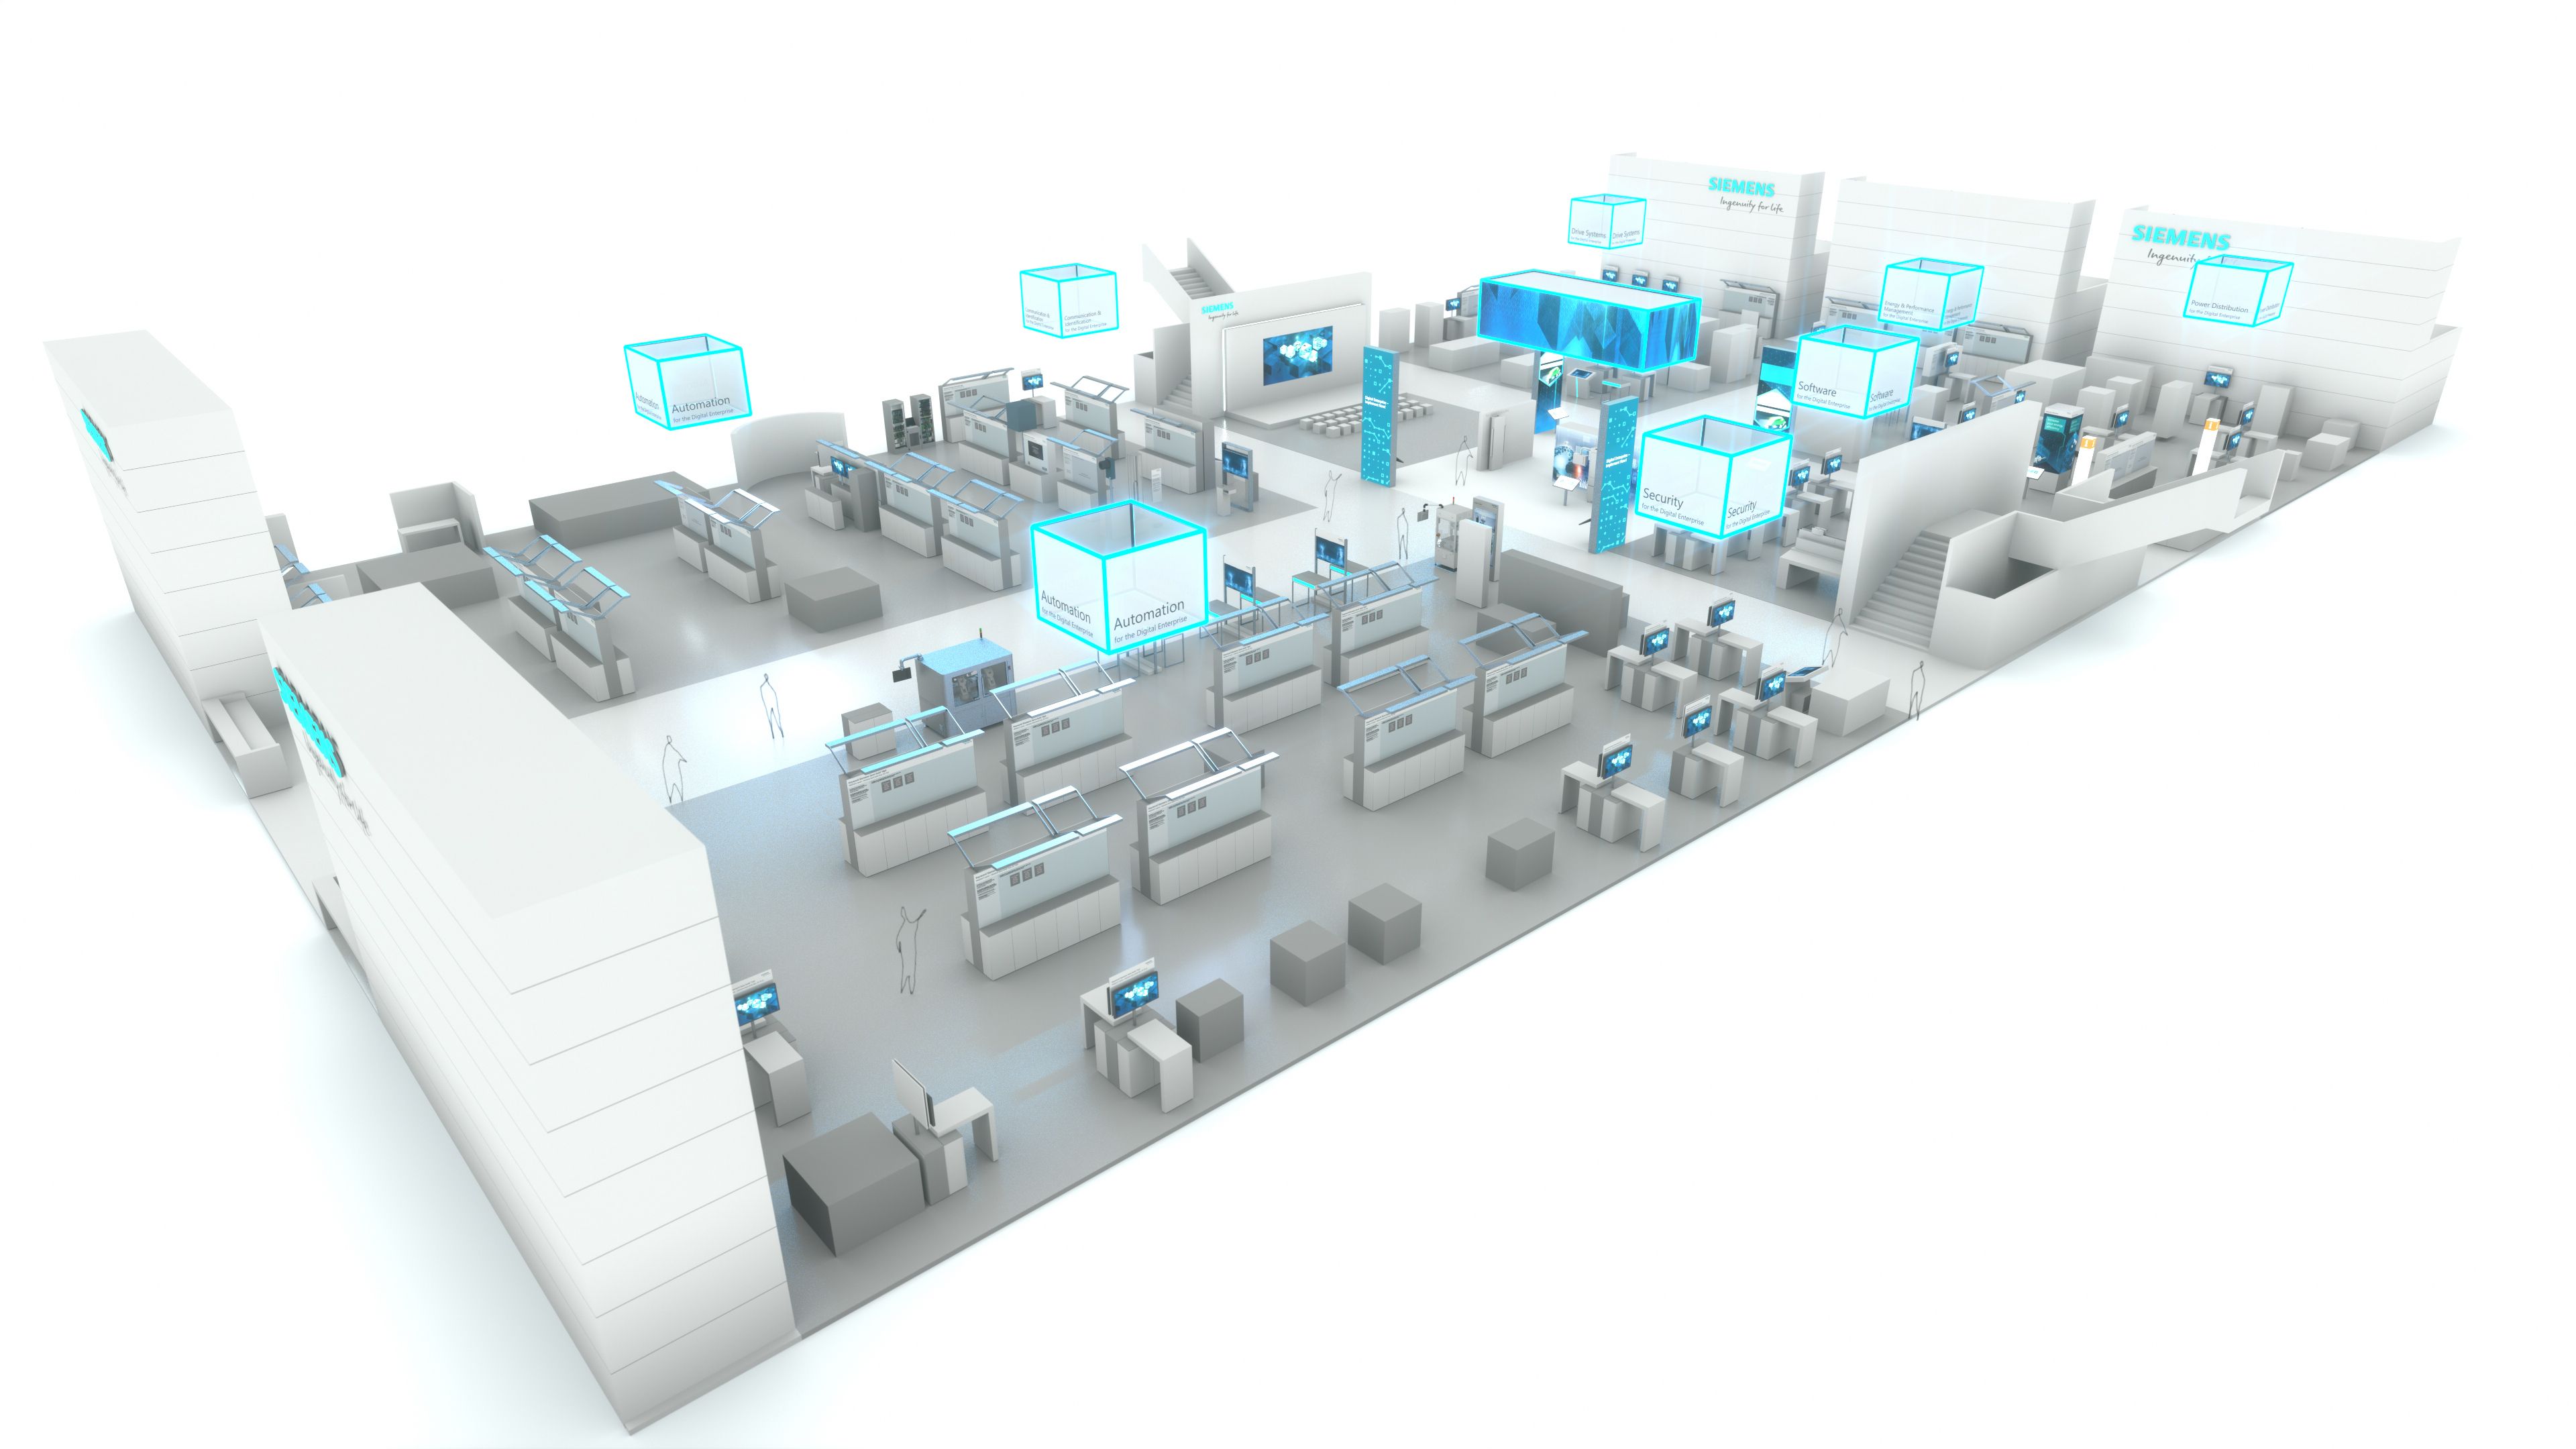 Um novo Digital Experience Center: o futuro da tecnologia aplicada no  ecossistema da Siemens